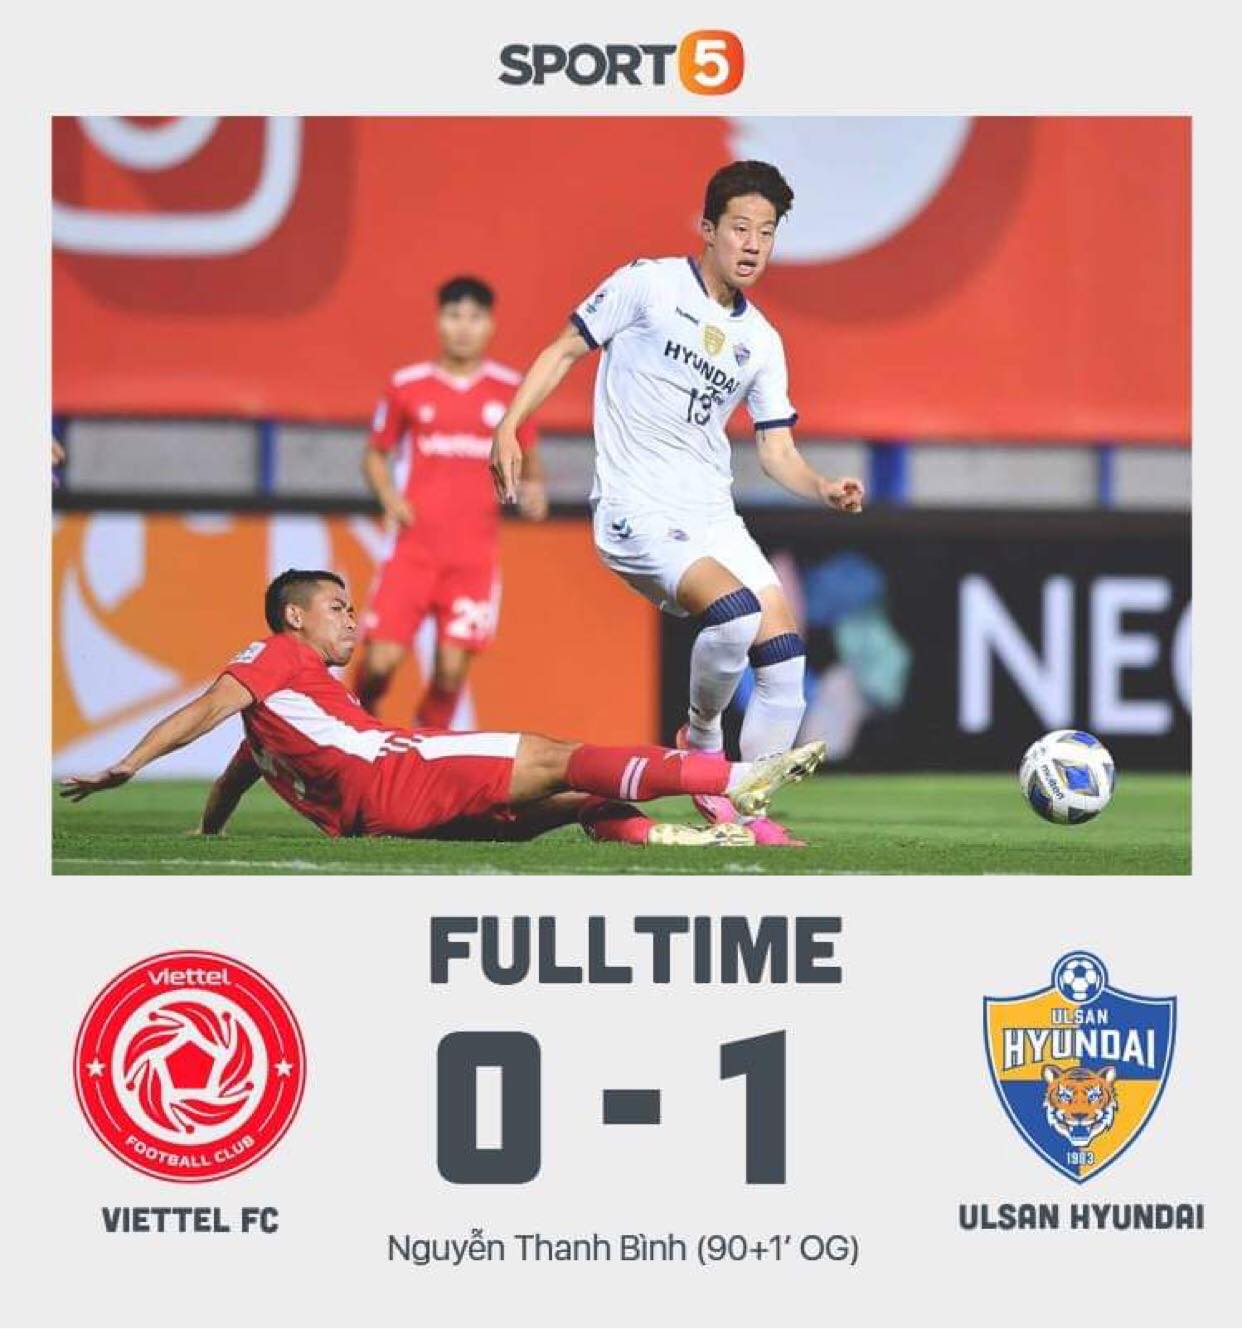 Báo Hàn chỉ trích Ulsan Hyundai vì sút 11 quả chỉ trúng 1 trong trận gặp CLB Viettel ở AFC Champions League 2021.  - Ảnh 3.